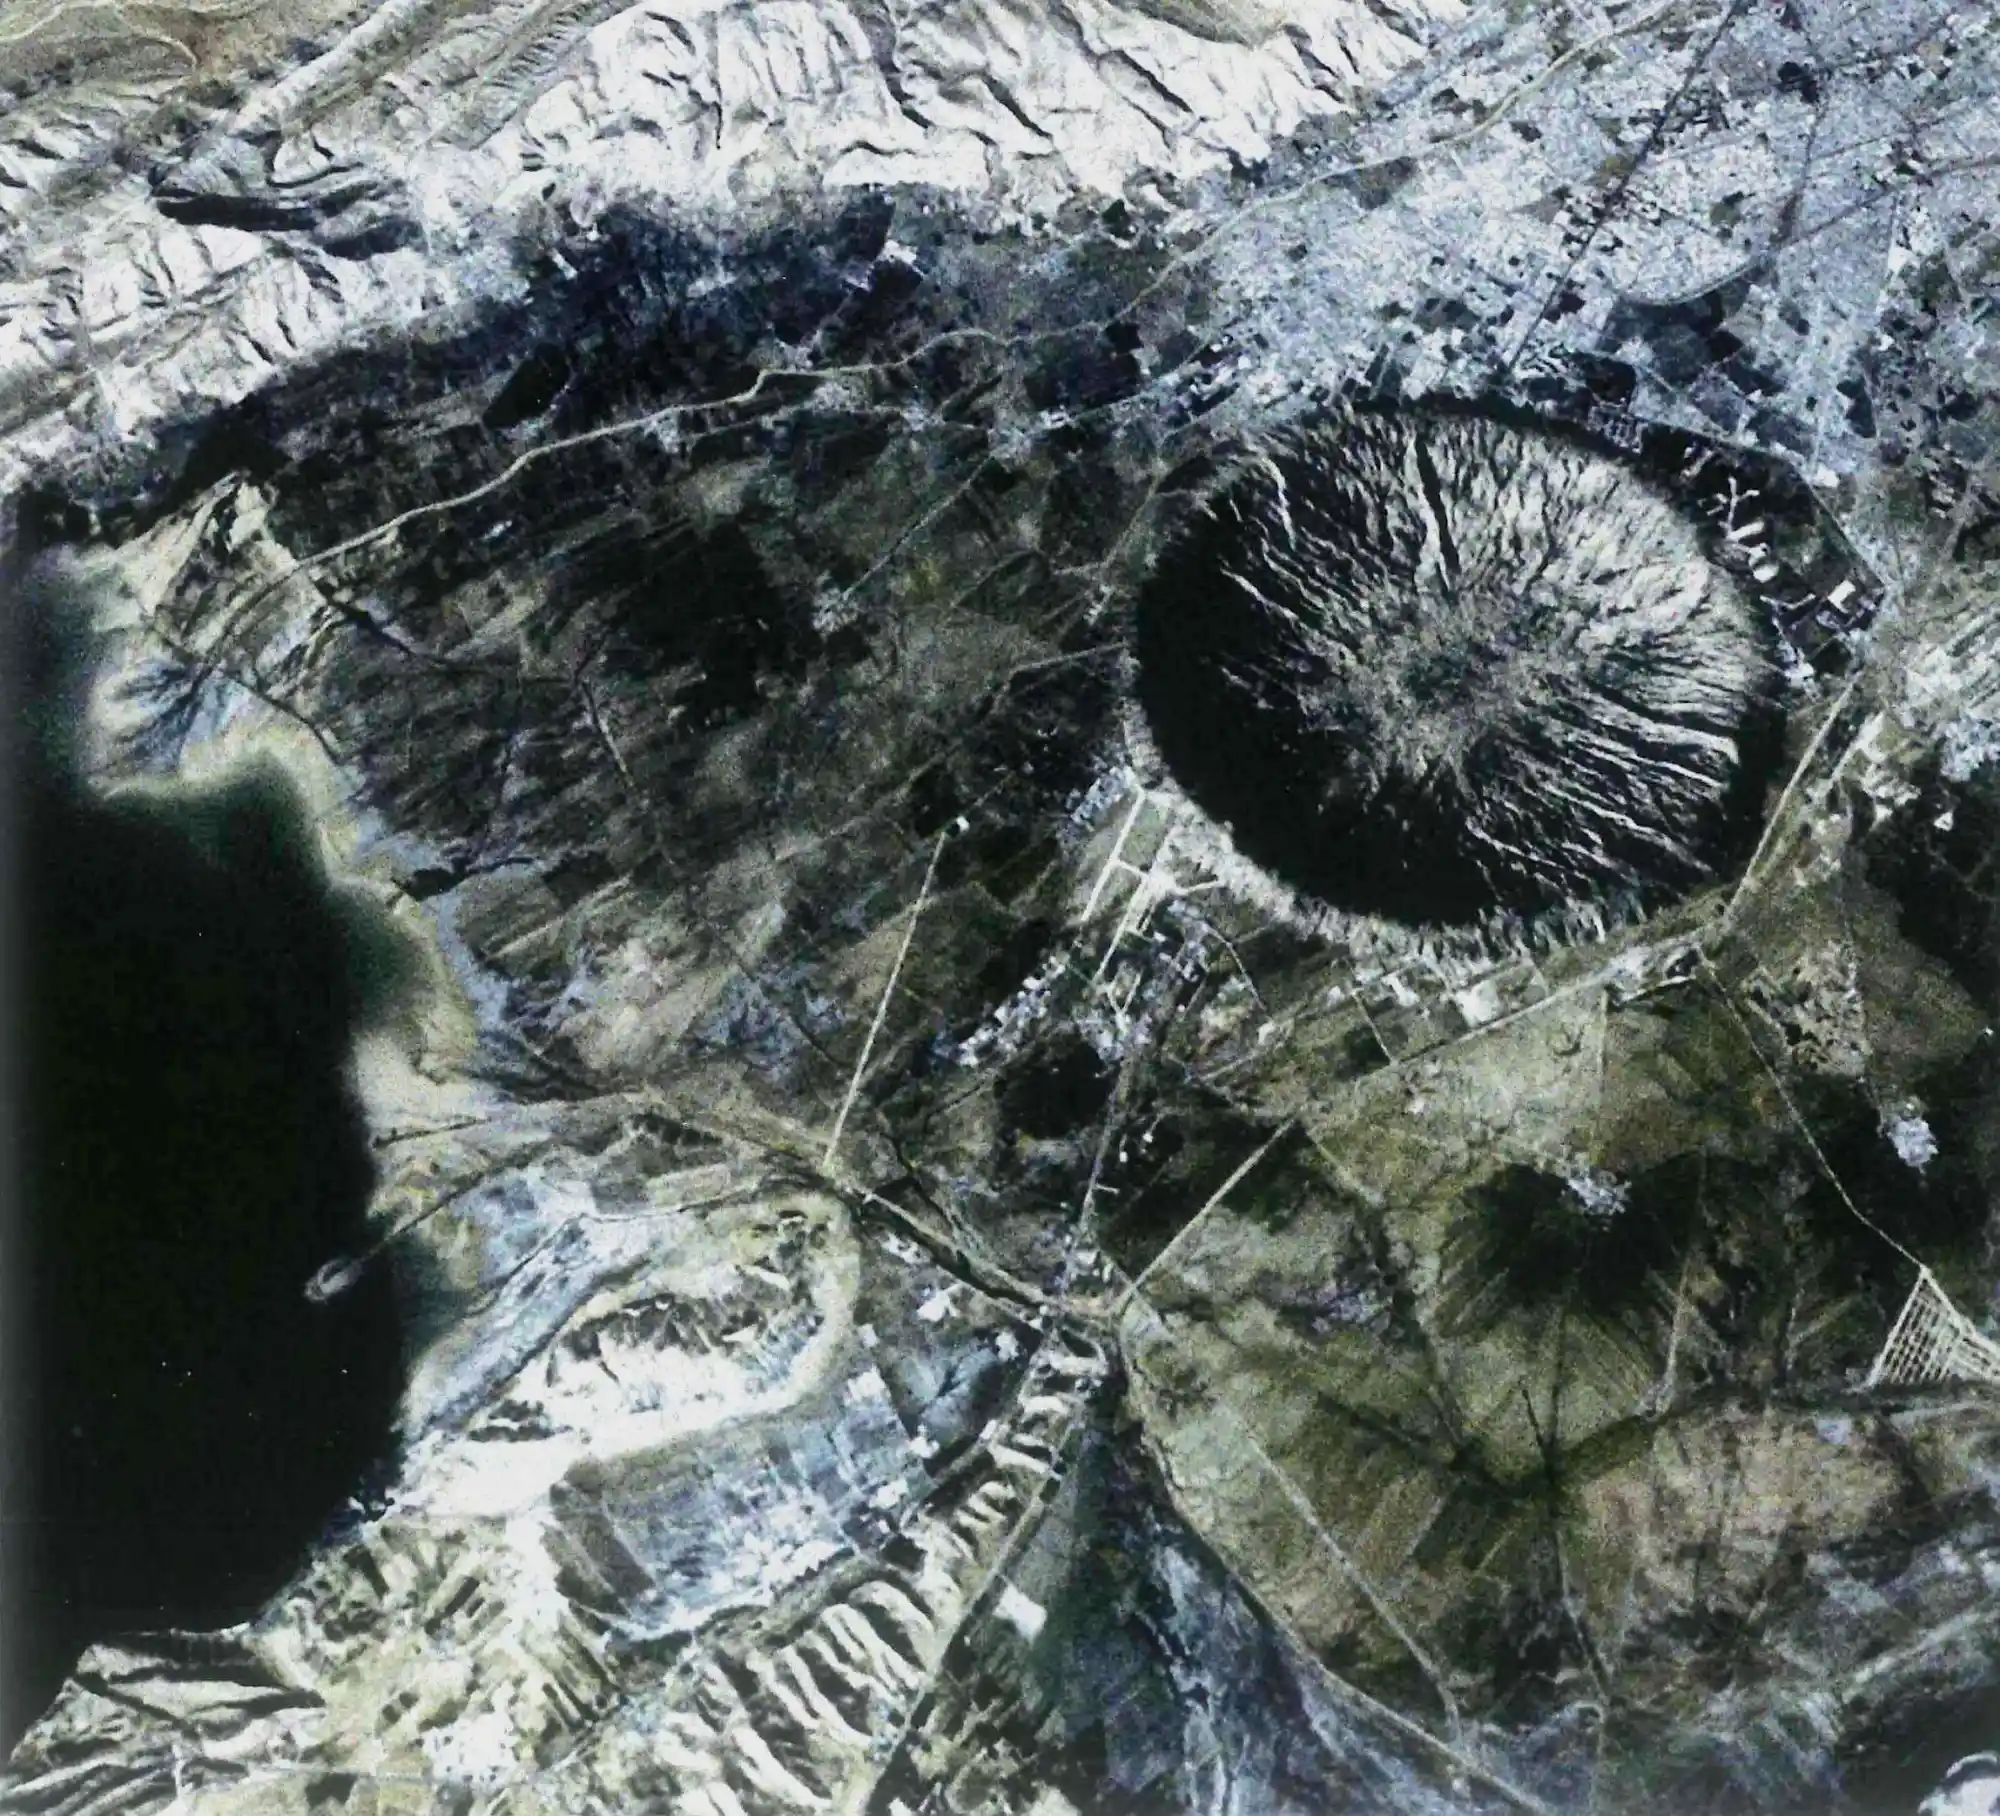 位于原圣方舟空军基地的无名陨石坑，这是尤利西斯袭击城市地区的最具破坏力的碎片之一，摧毁了位于郊区的Saint Ark空军基地，留下一个直径近5公里的陨石坑。